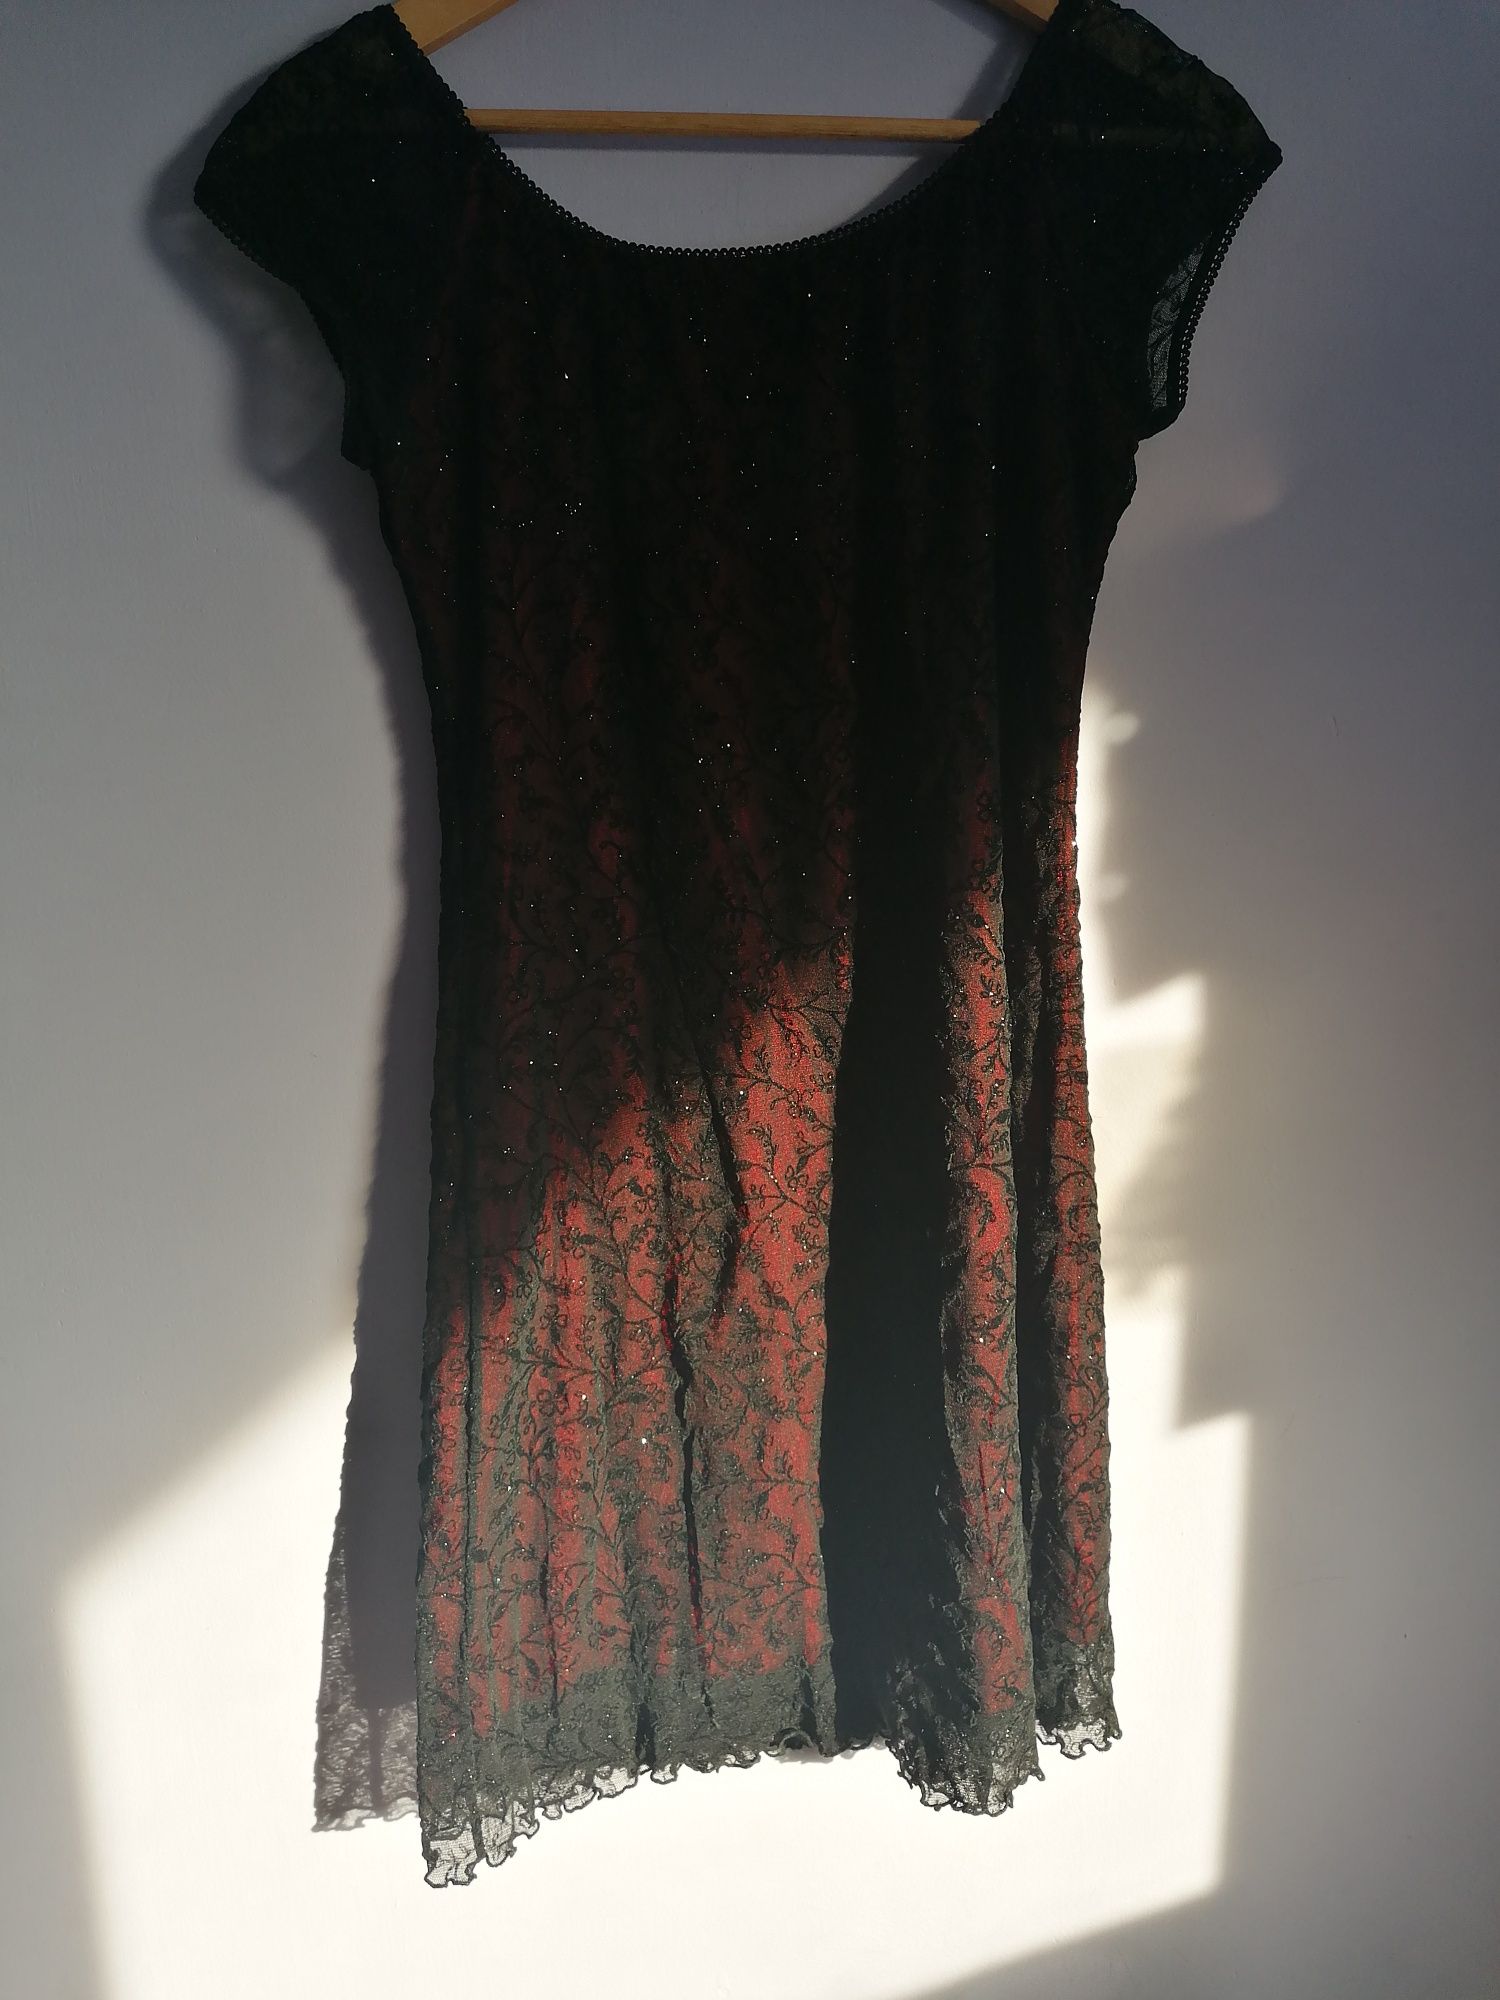 Sukienka czarna/czerwona, rozmiar M/S, vintage